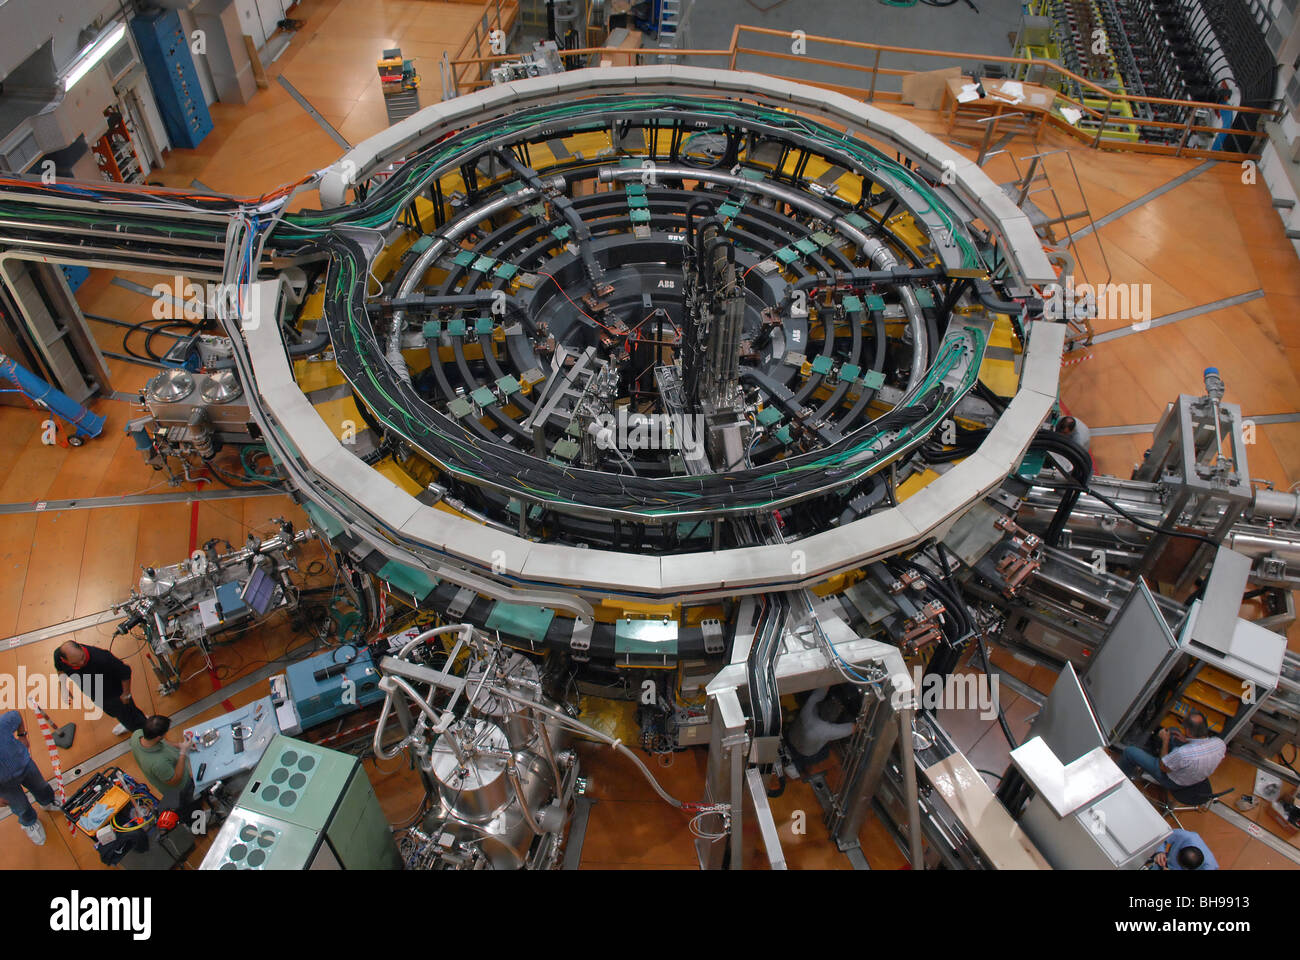 RFX consortium, recherches scientifiques et technologiques sur la fusion thermonucléaire contrôlée. Banque D'Images